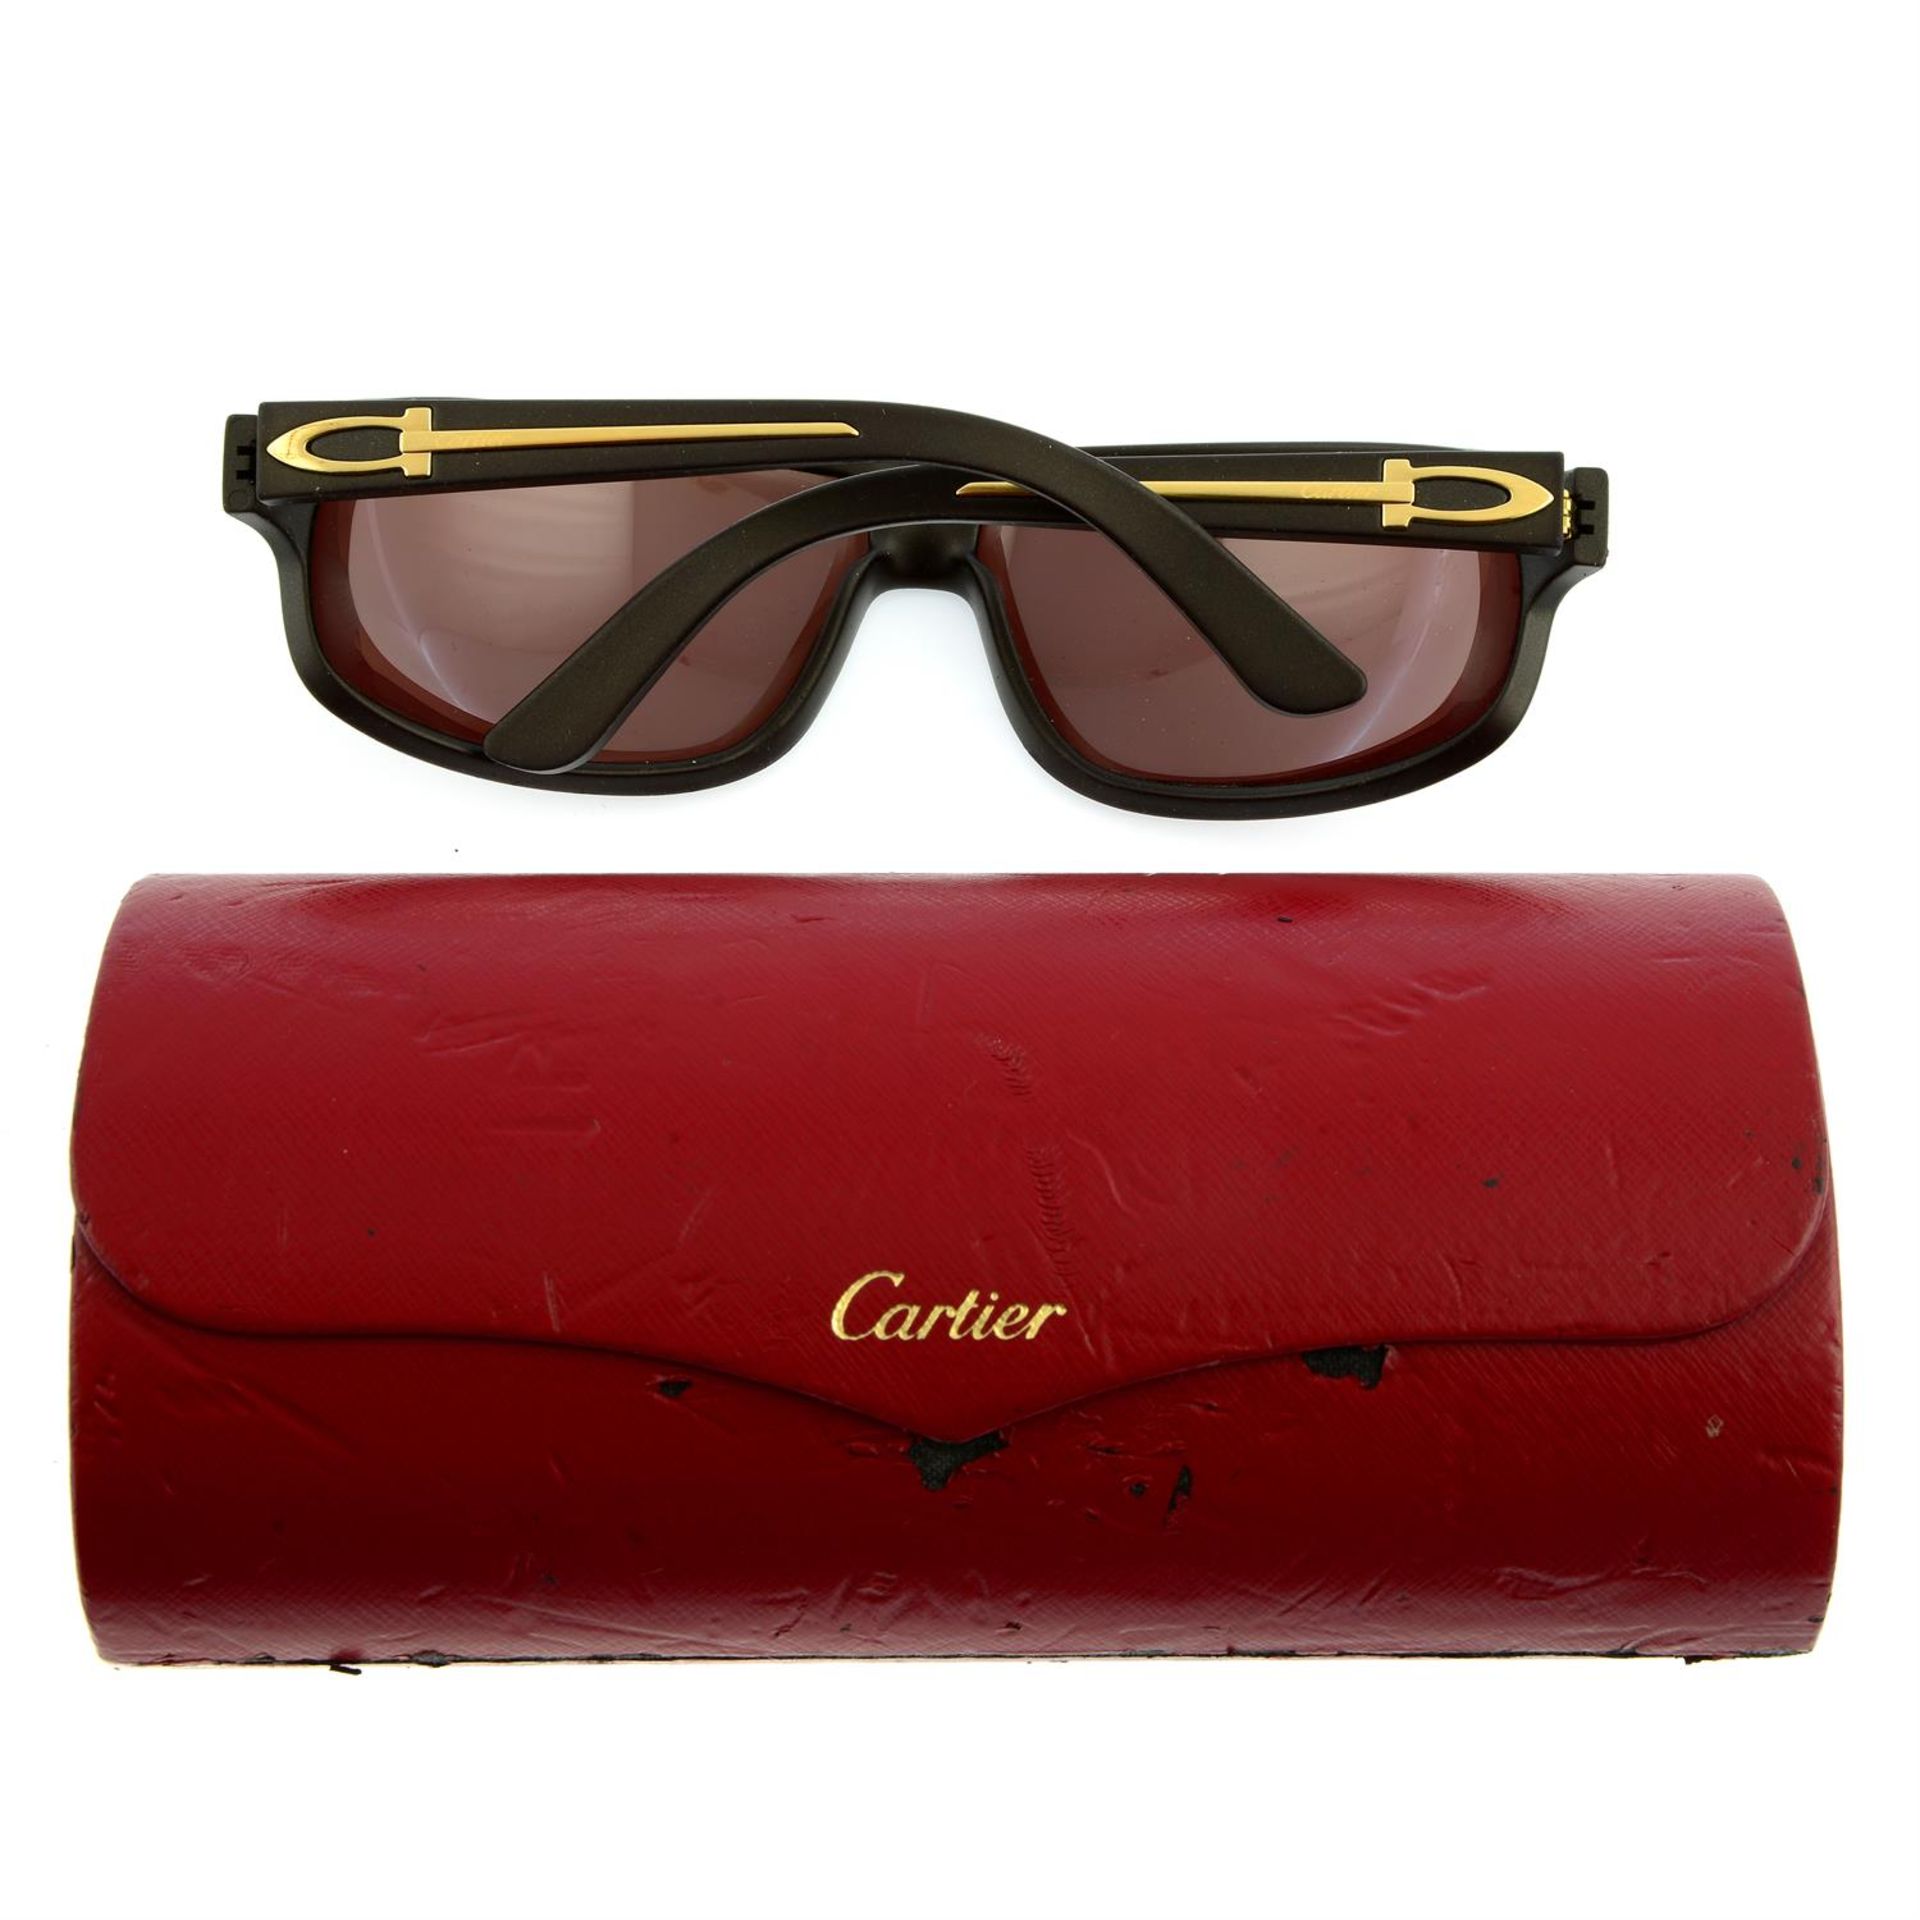 CARTIER - a pair of prescription sunglasses. - Image 2 of 2